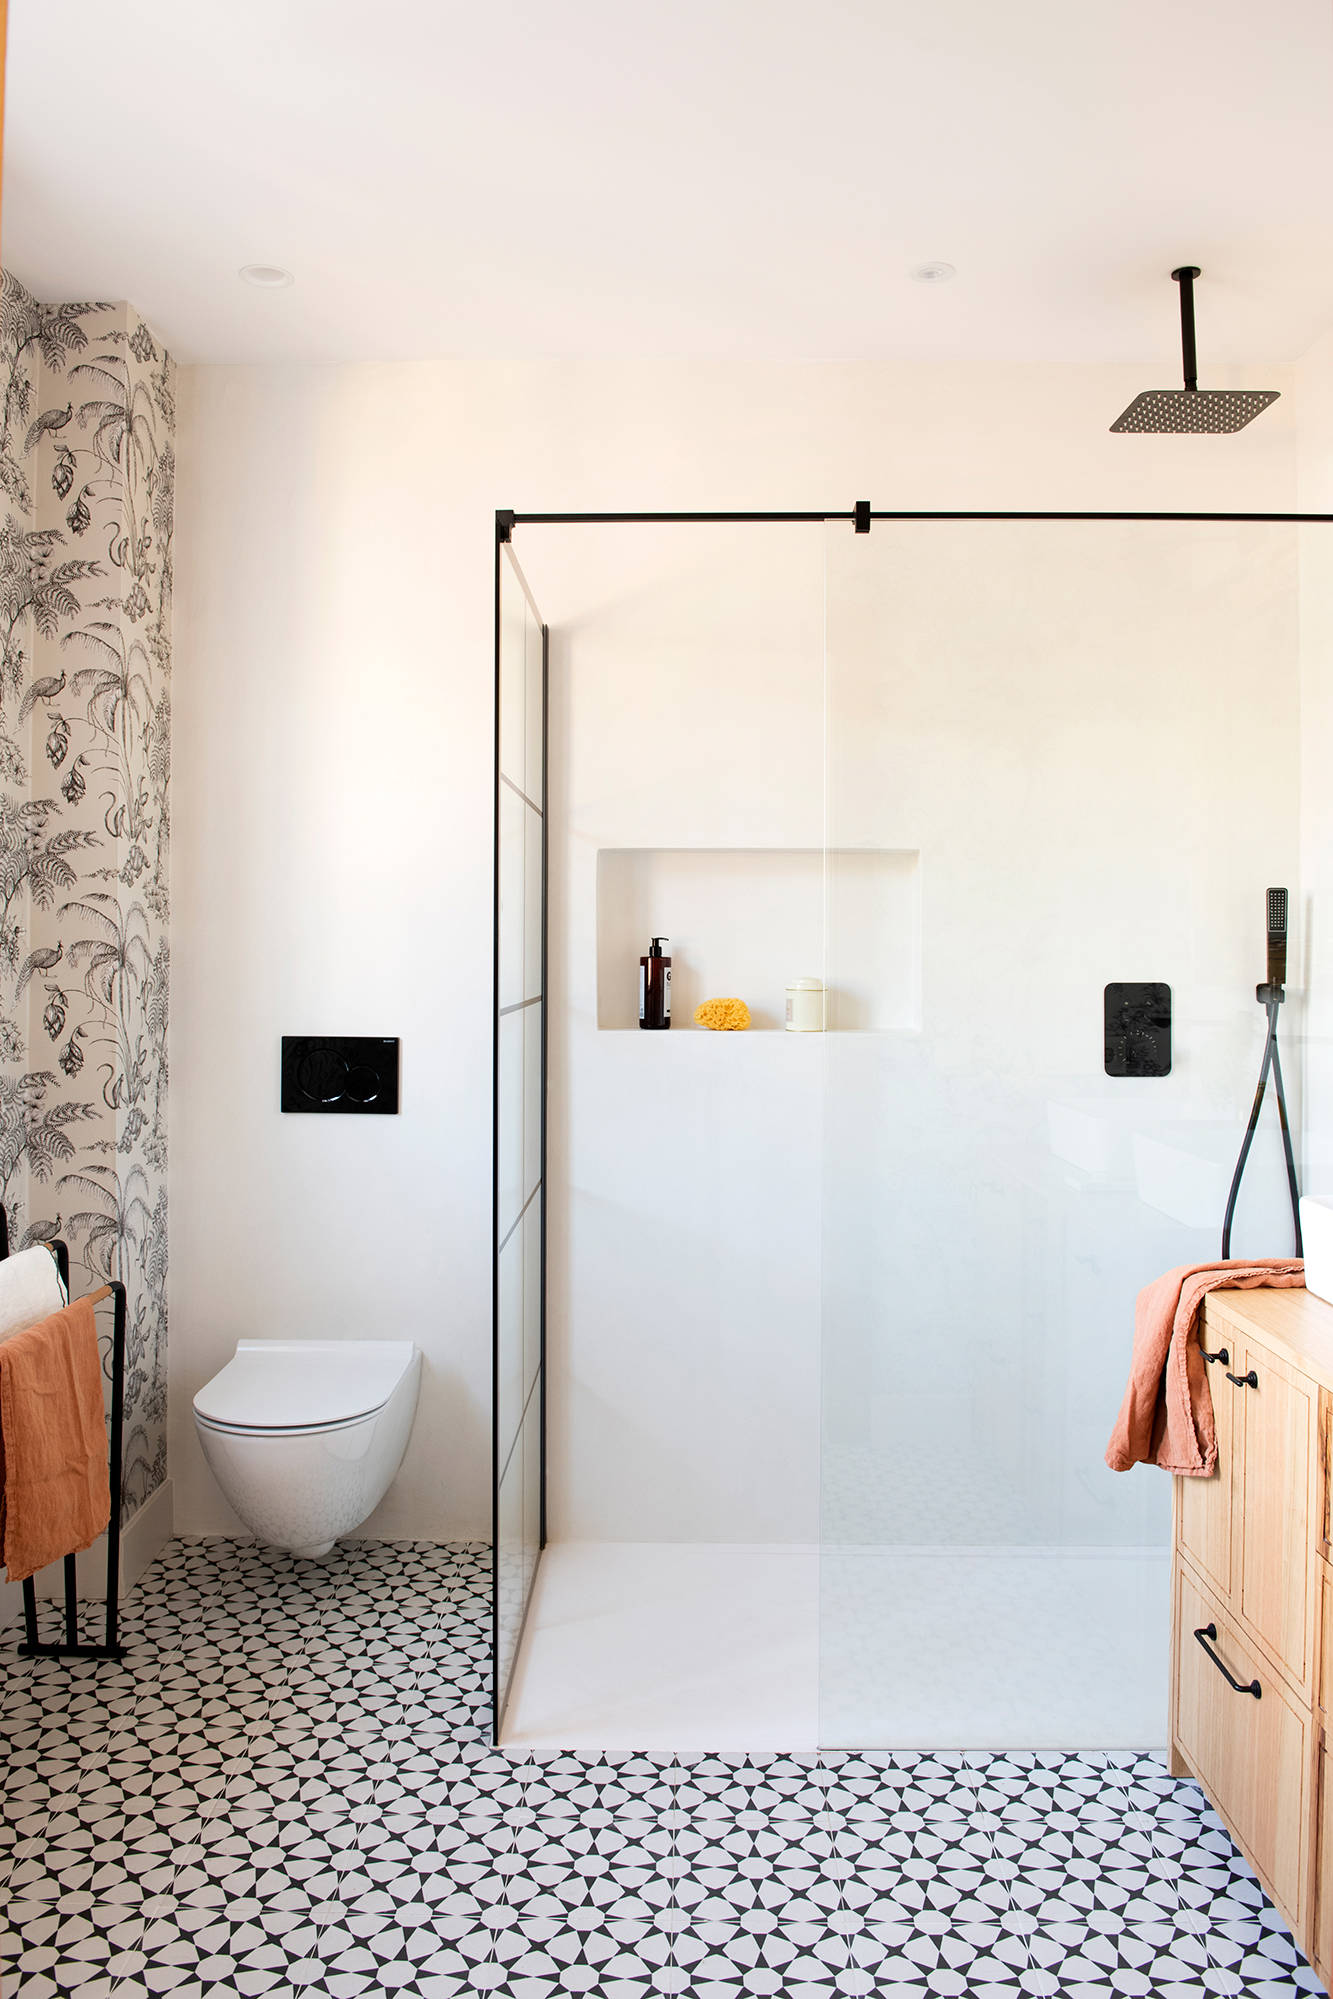 Baño revestido con microcemento, baldosa y papel pintado en paredes y suelo